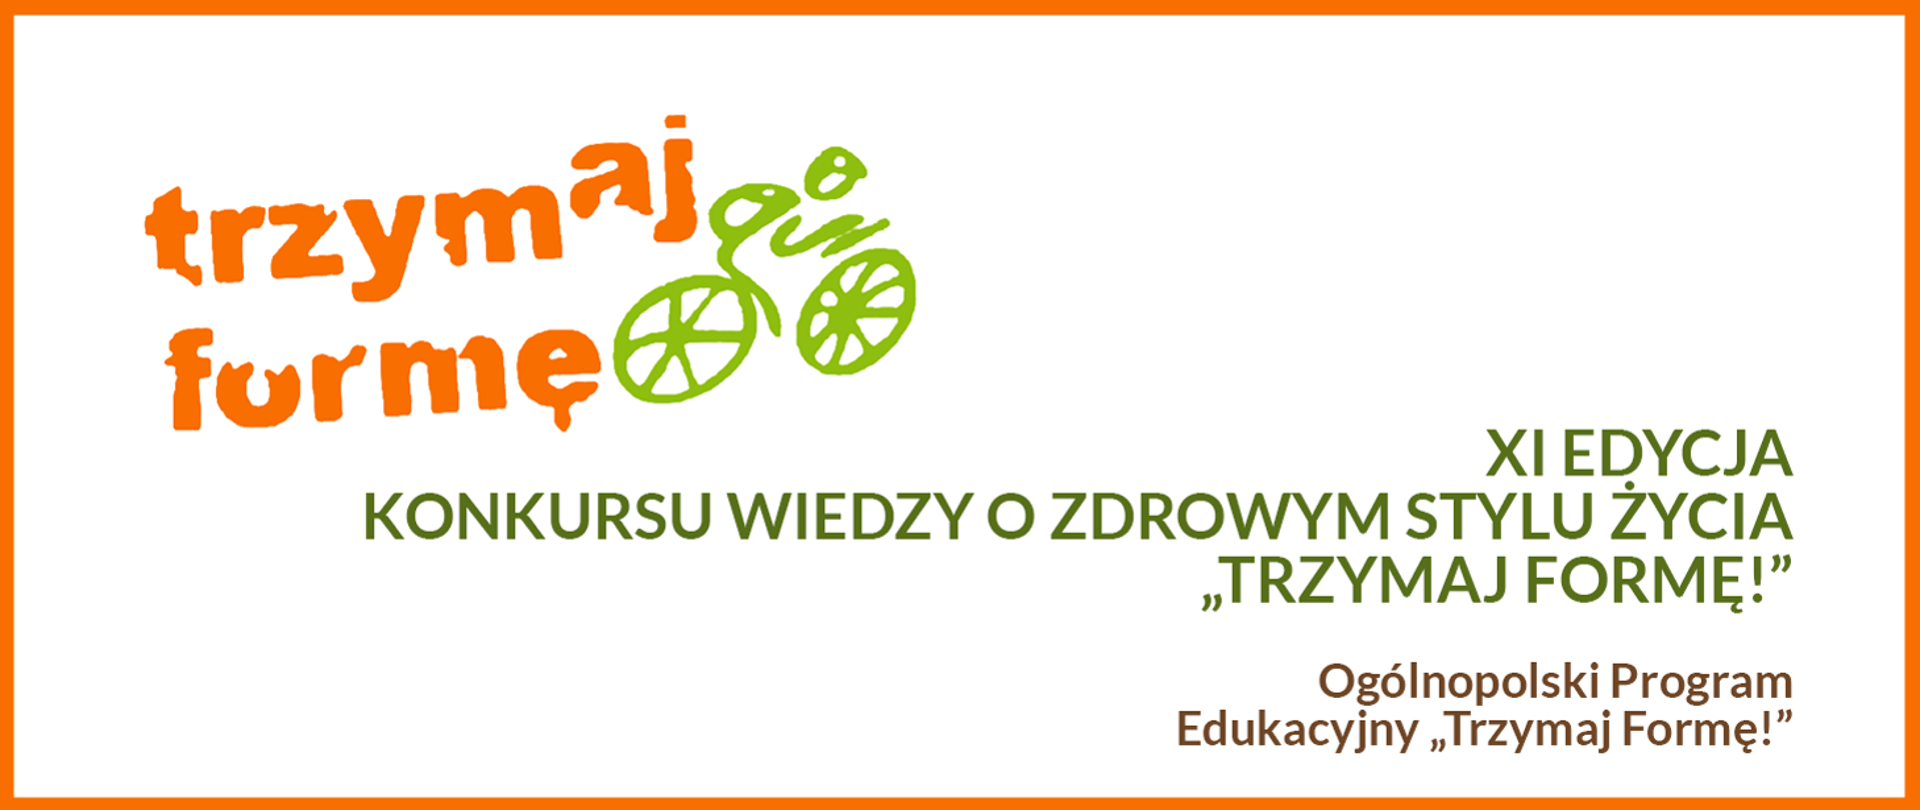 w prostokącie na białym tle pomarańczowy napis logo trzymaj formę i zielony rowerzysta na zielonym rowerze obok zielony napis XI edycja konkursu wiedzy o zdrowym stylu życia "Trzymaj Formę!" Ogólnopolski Program Edukacyjny "Trzymaj Formę!"